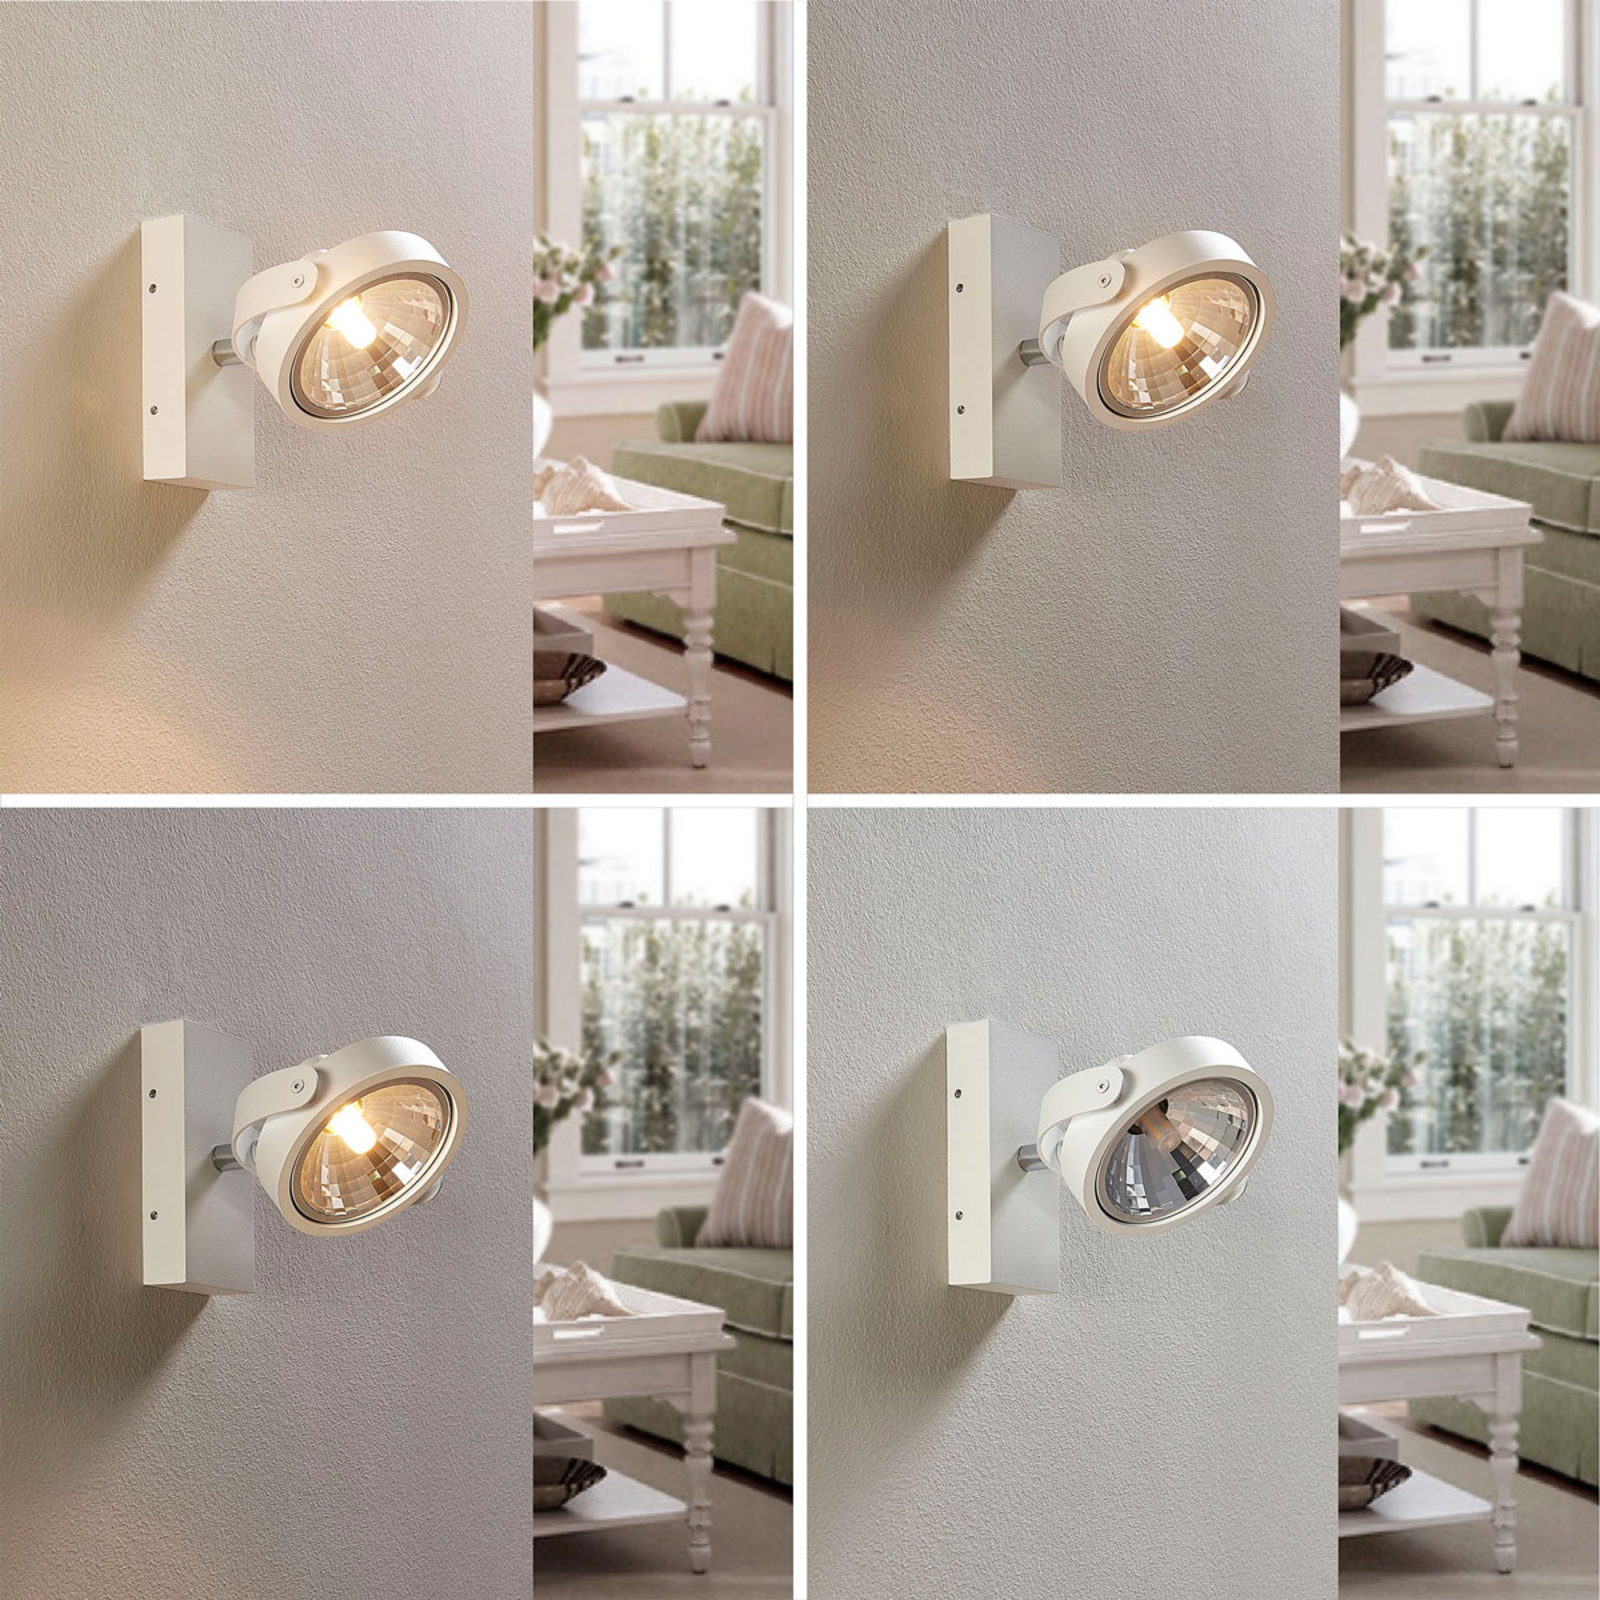 LED-Strahler Lieven Weiß Wand Decke Lampenwelt Spot G9 Aluminium Wandleuchte 